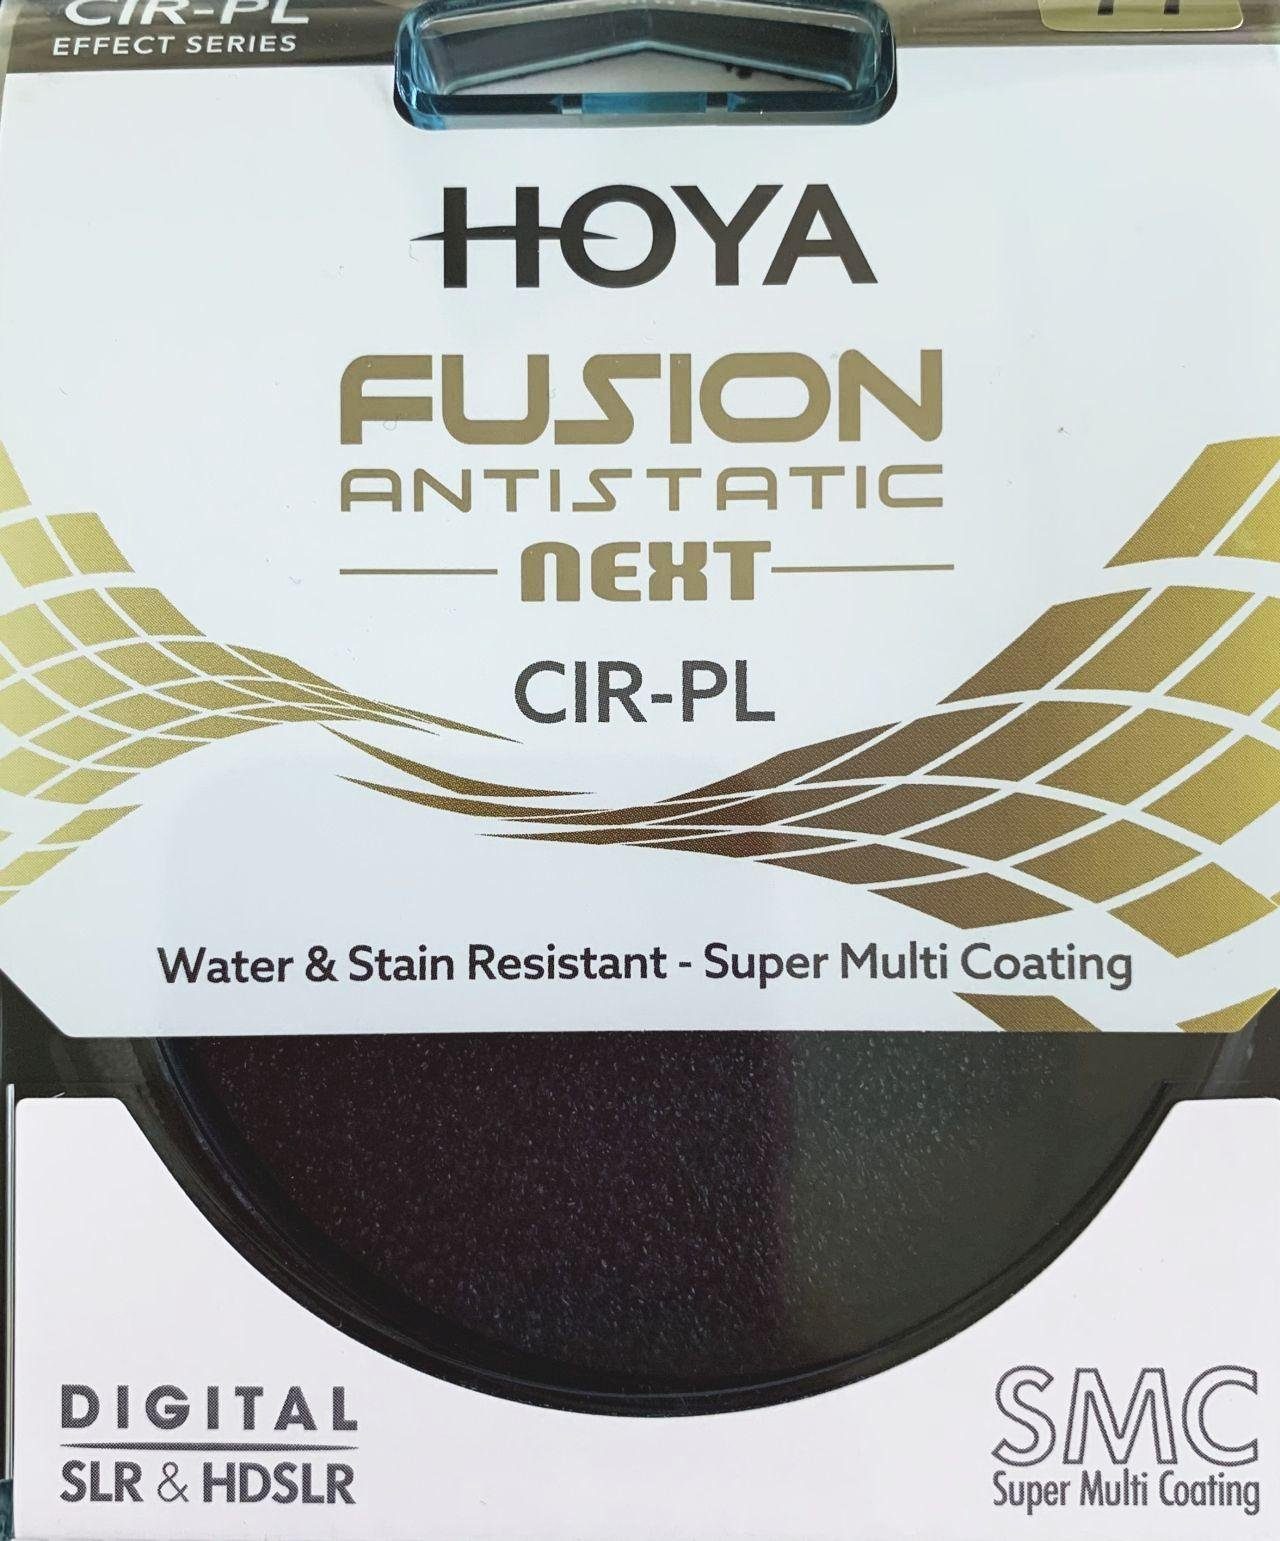 Circular Fusion 82mm Objektivzubehör Antistatic Polfilter Hoya Next